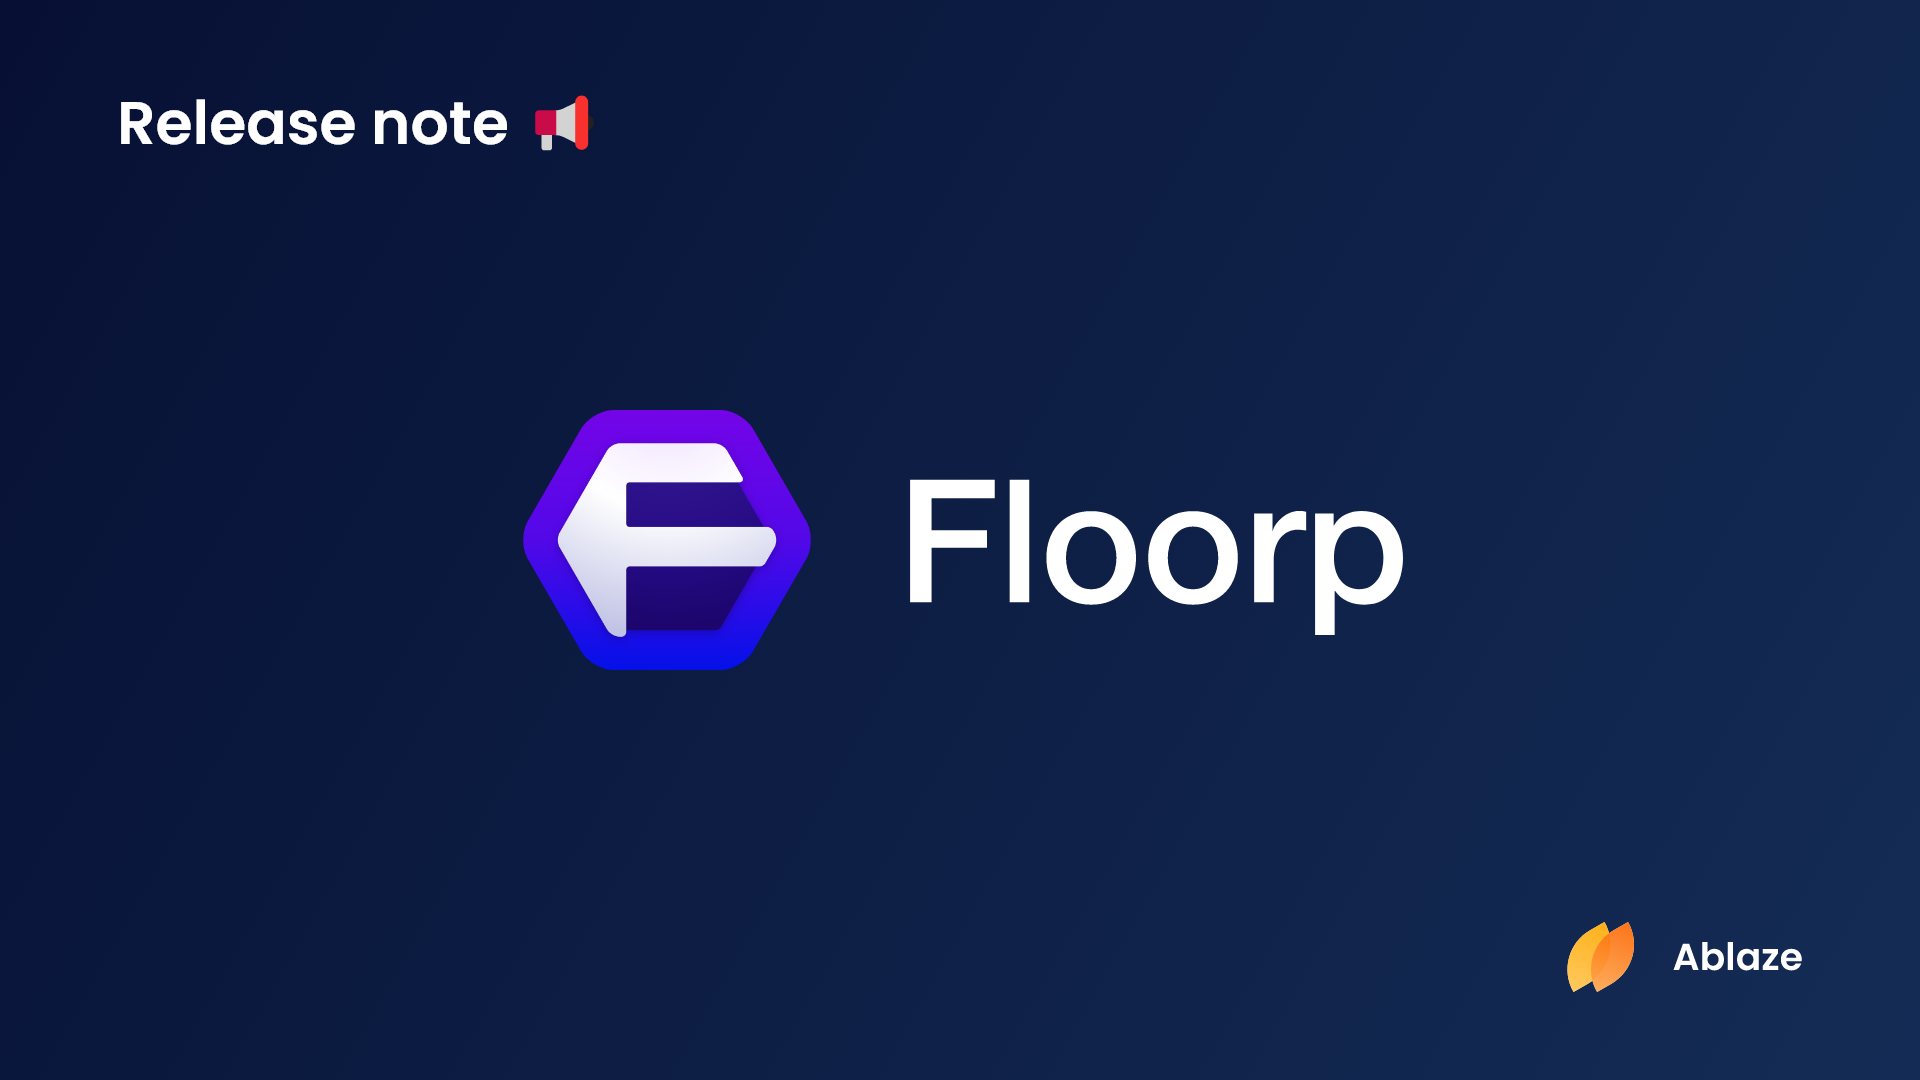 Floorp ブラウザー | バージョン 10.8.0 リリースノート